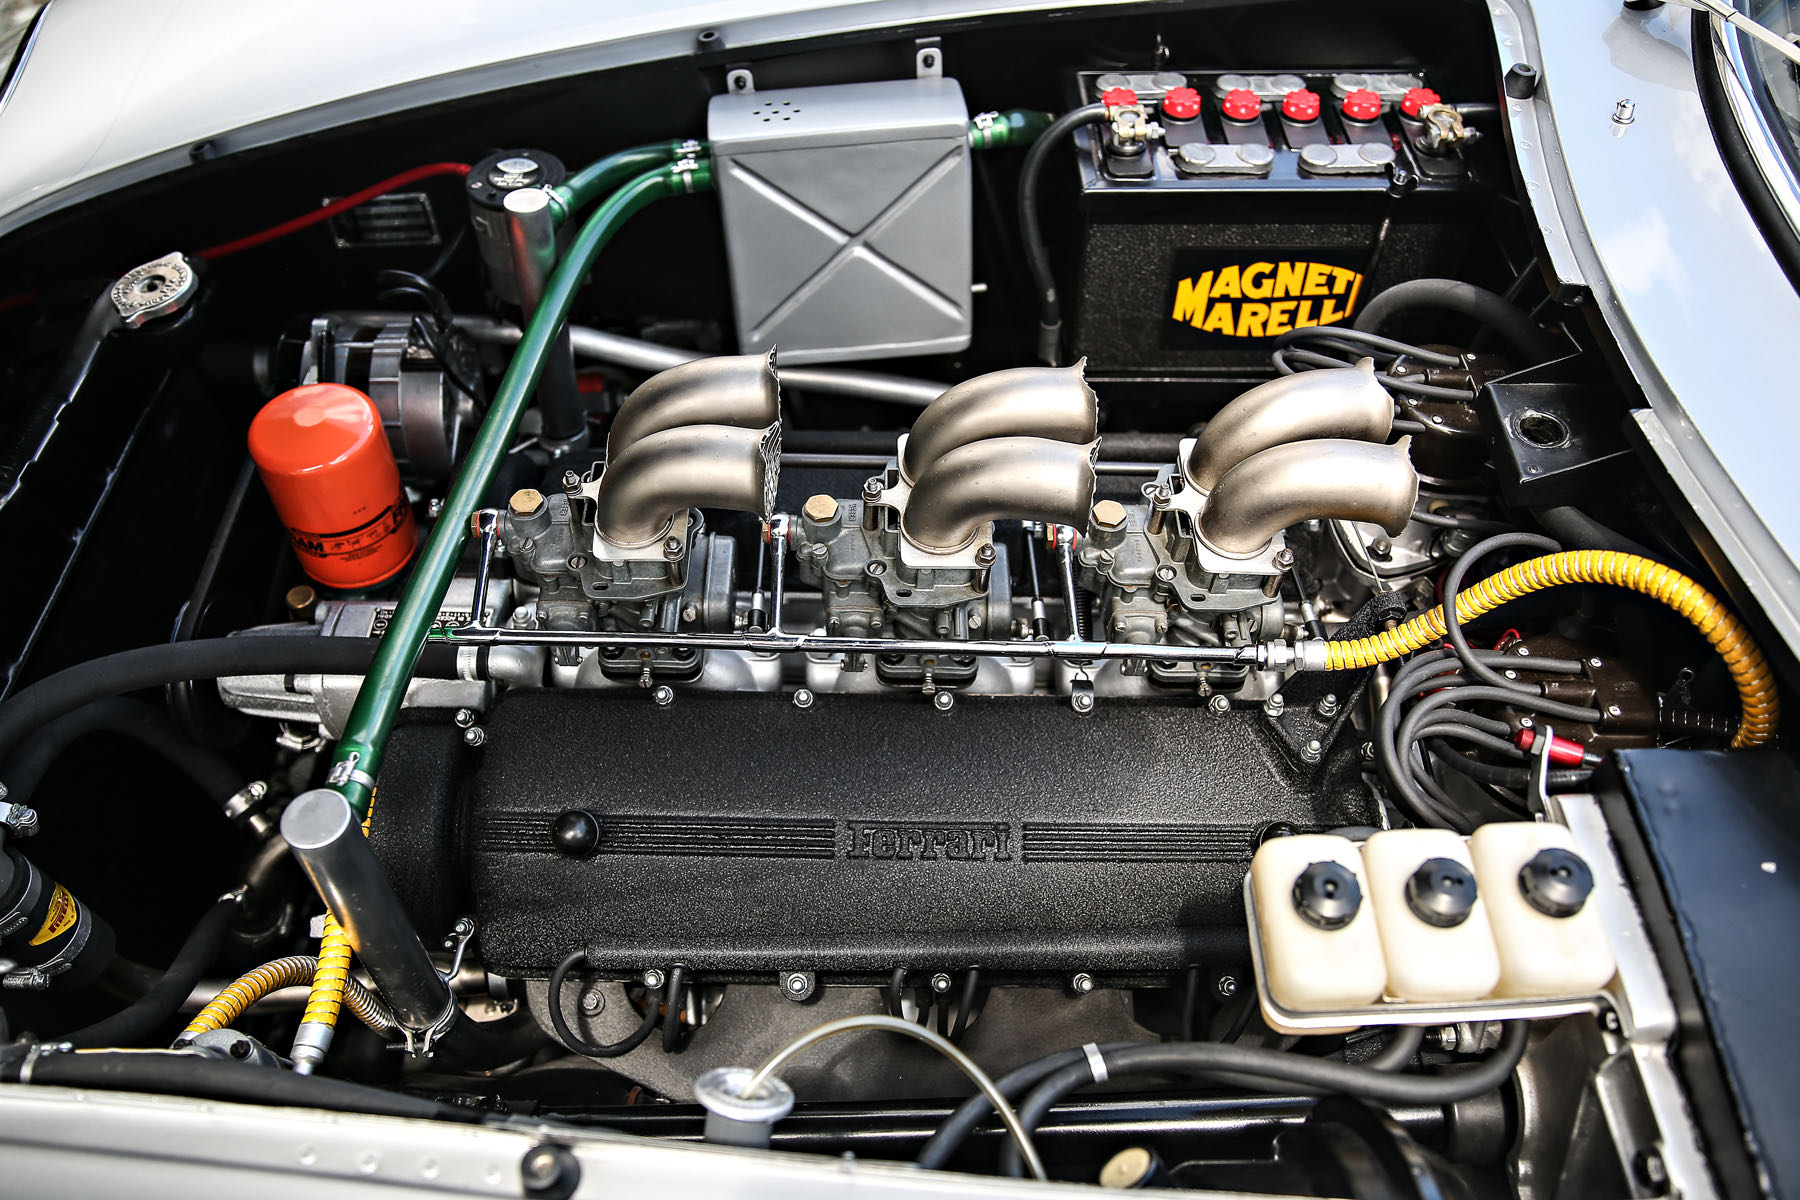 V12 engine | Photo by Marcel Massini